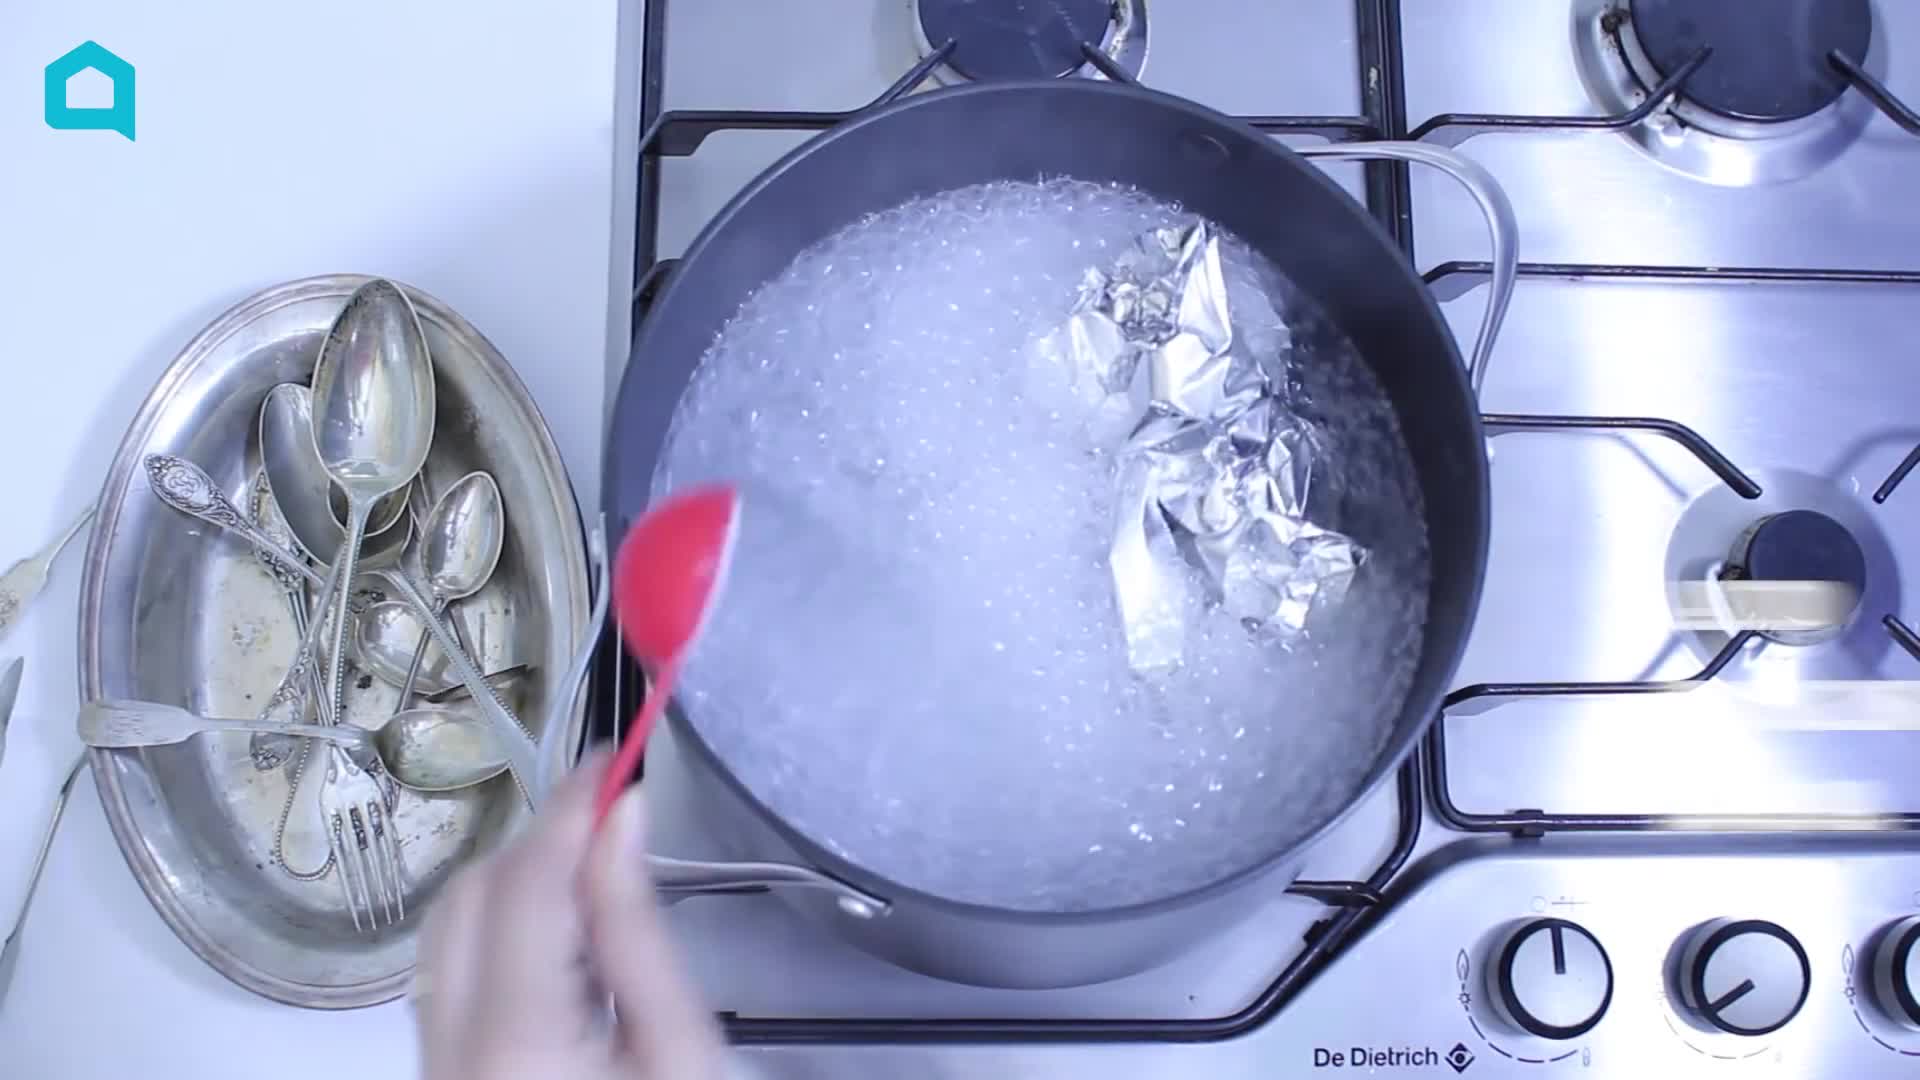 Как почистить серебро в домашних условиях: быстро и эффективно избавляемся от налета и черноты